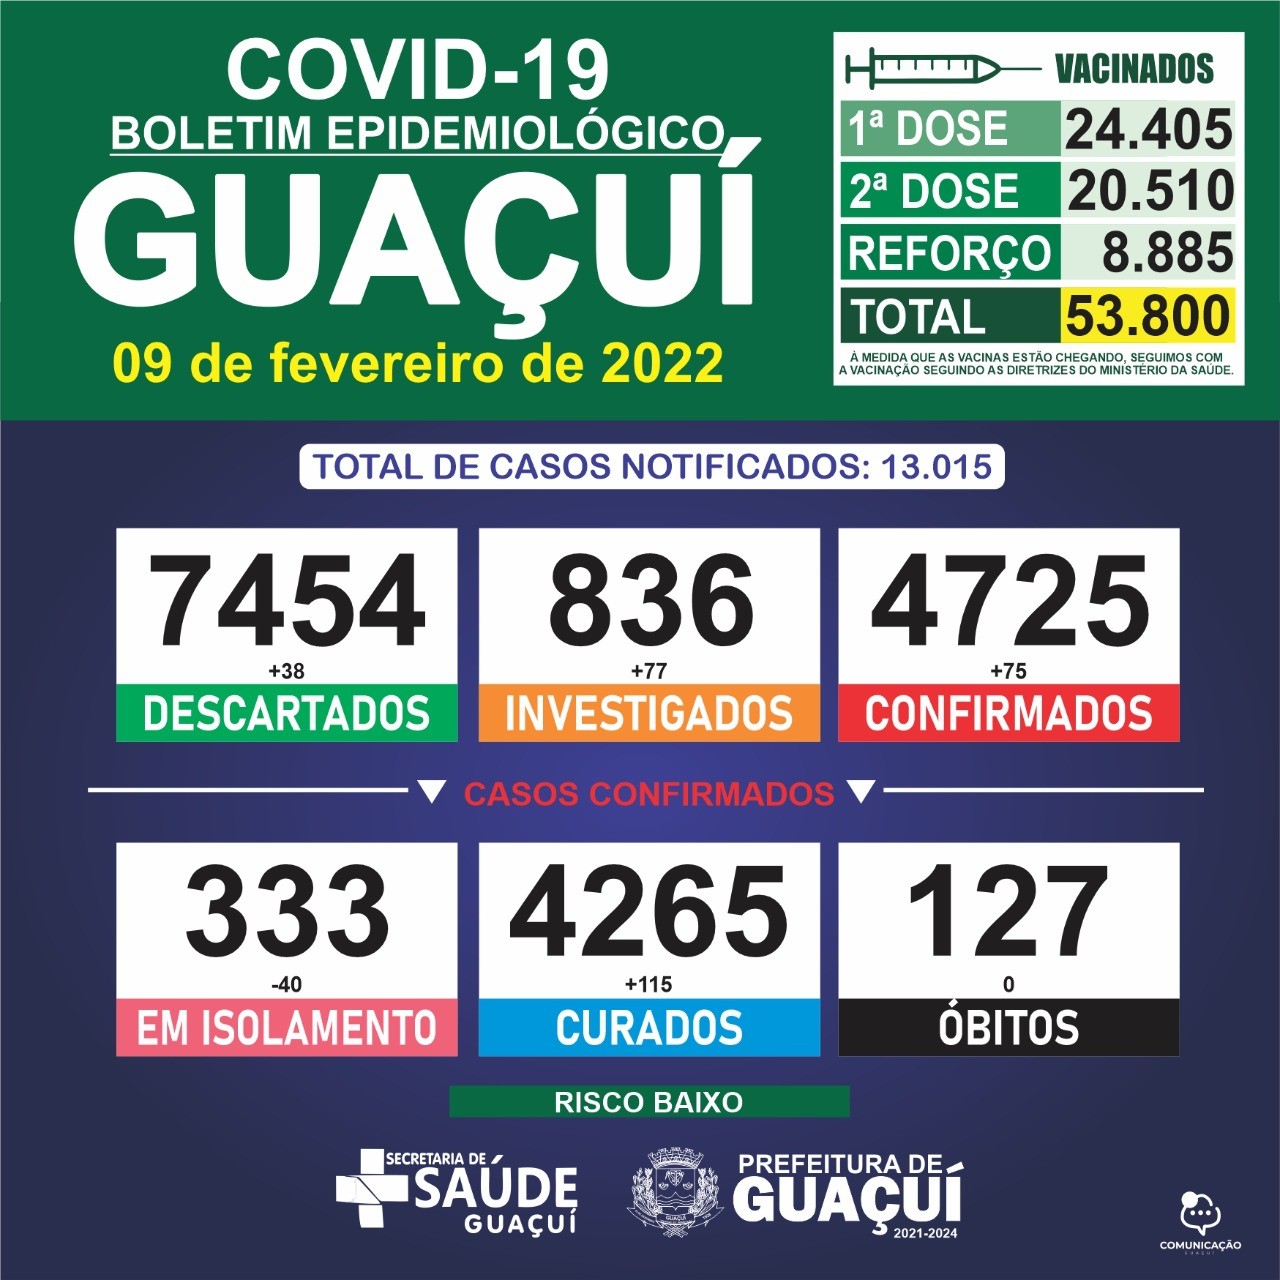 Boletim Epidemiológico 09/02/2022: Guaçuí registra 75 casos confirmados e 115 curados nas últimas 24 horas